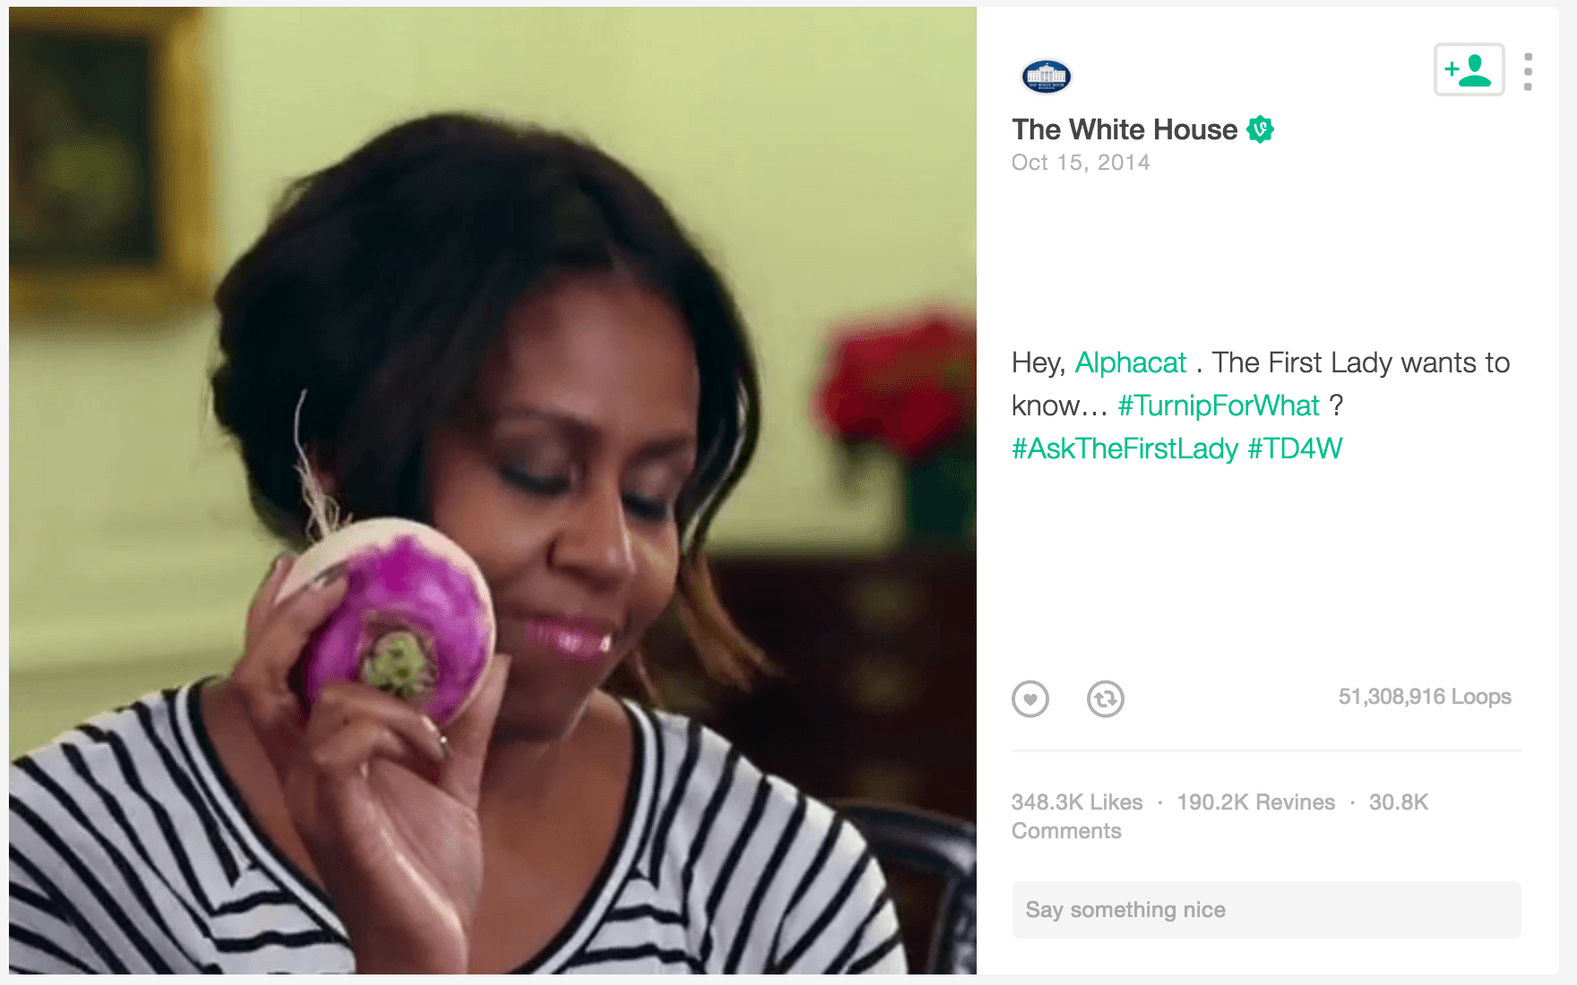 Ända från starten har Michelle Obama tagit på sig att få amerikaner att äta mer nyttig mat, så som bär, frukt och grönsaker. Hon är inte främmande för att ta till nya kanaler för att nå ut med sitt budskap, så som i en video på vine där hon lekte med orden "turnip" och "beet" för att få folk att inse att majrovor kan vara coolt.